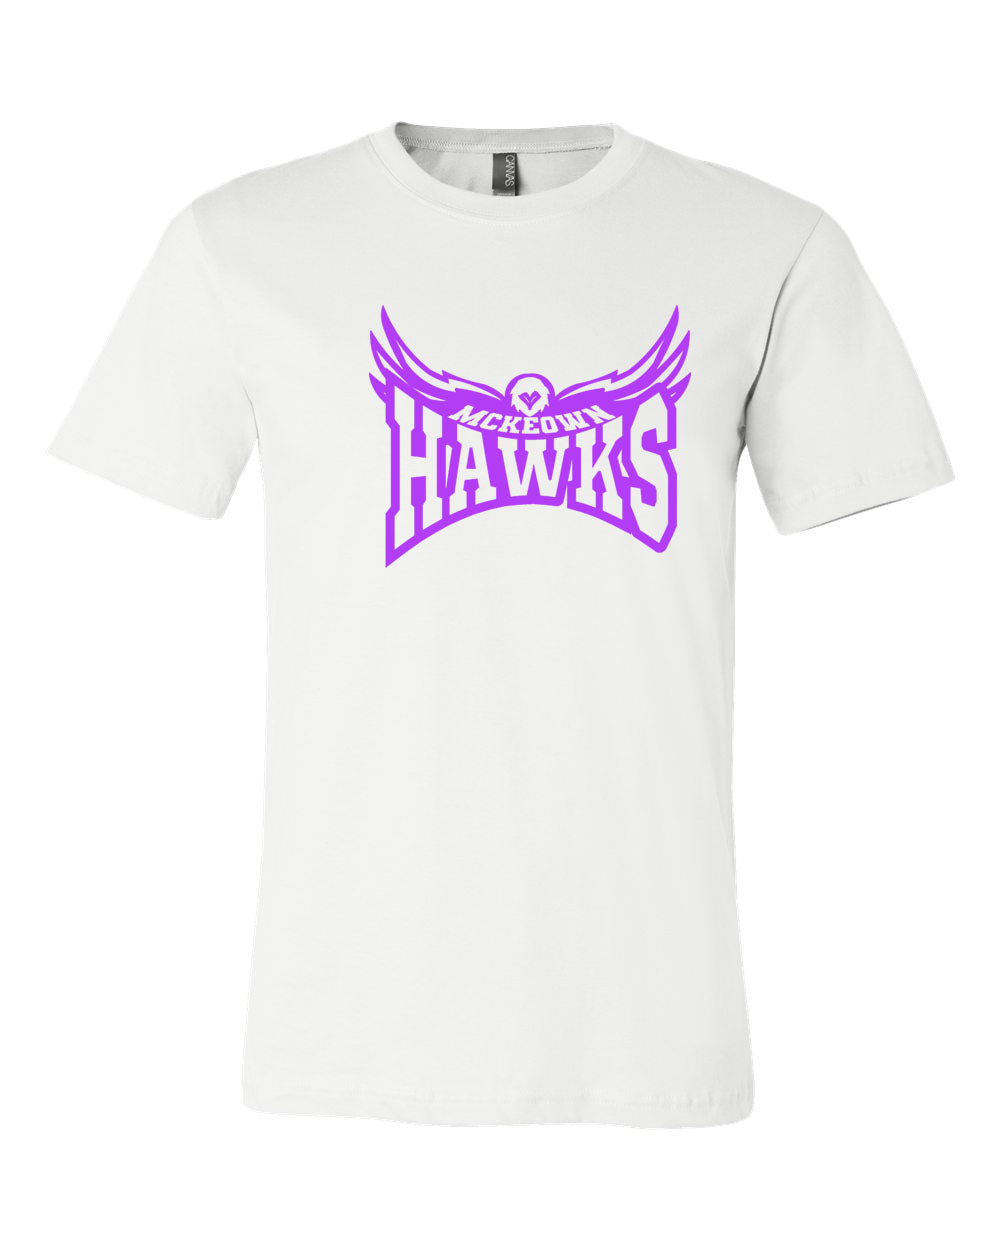 McKeown Design 6 Hawk T-Shirt